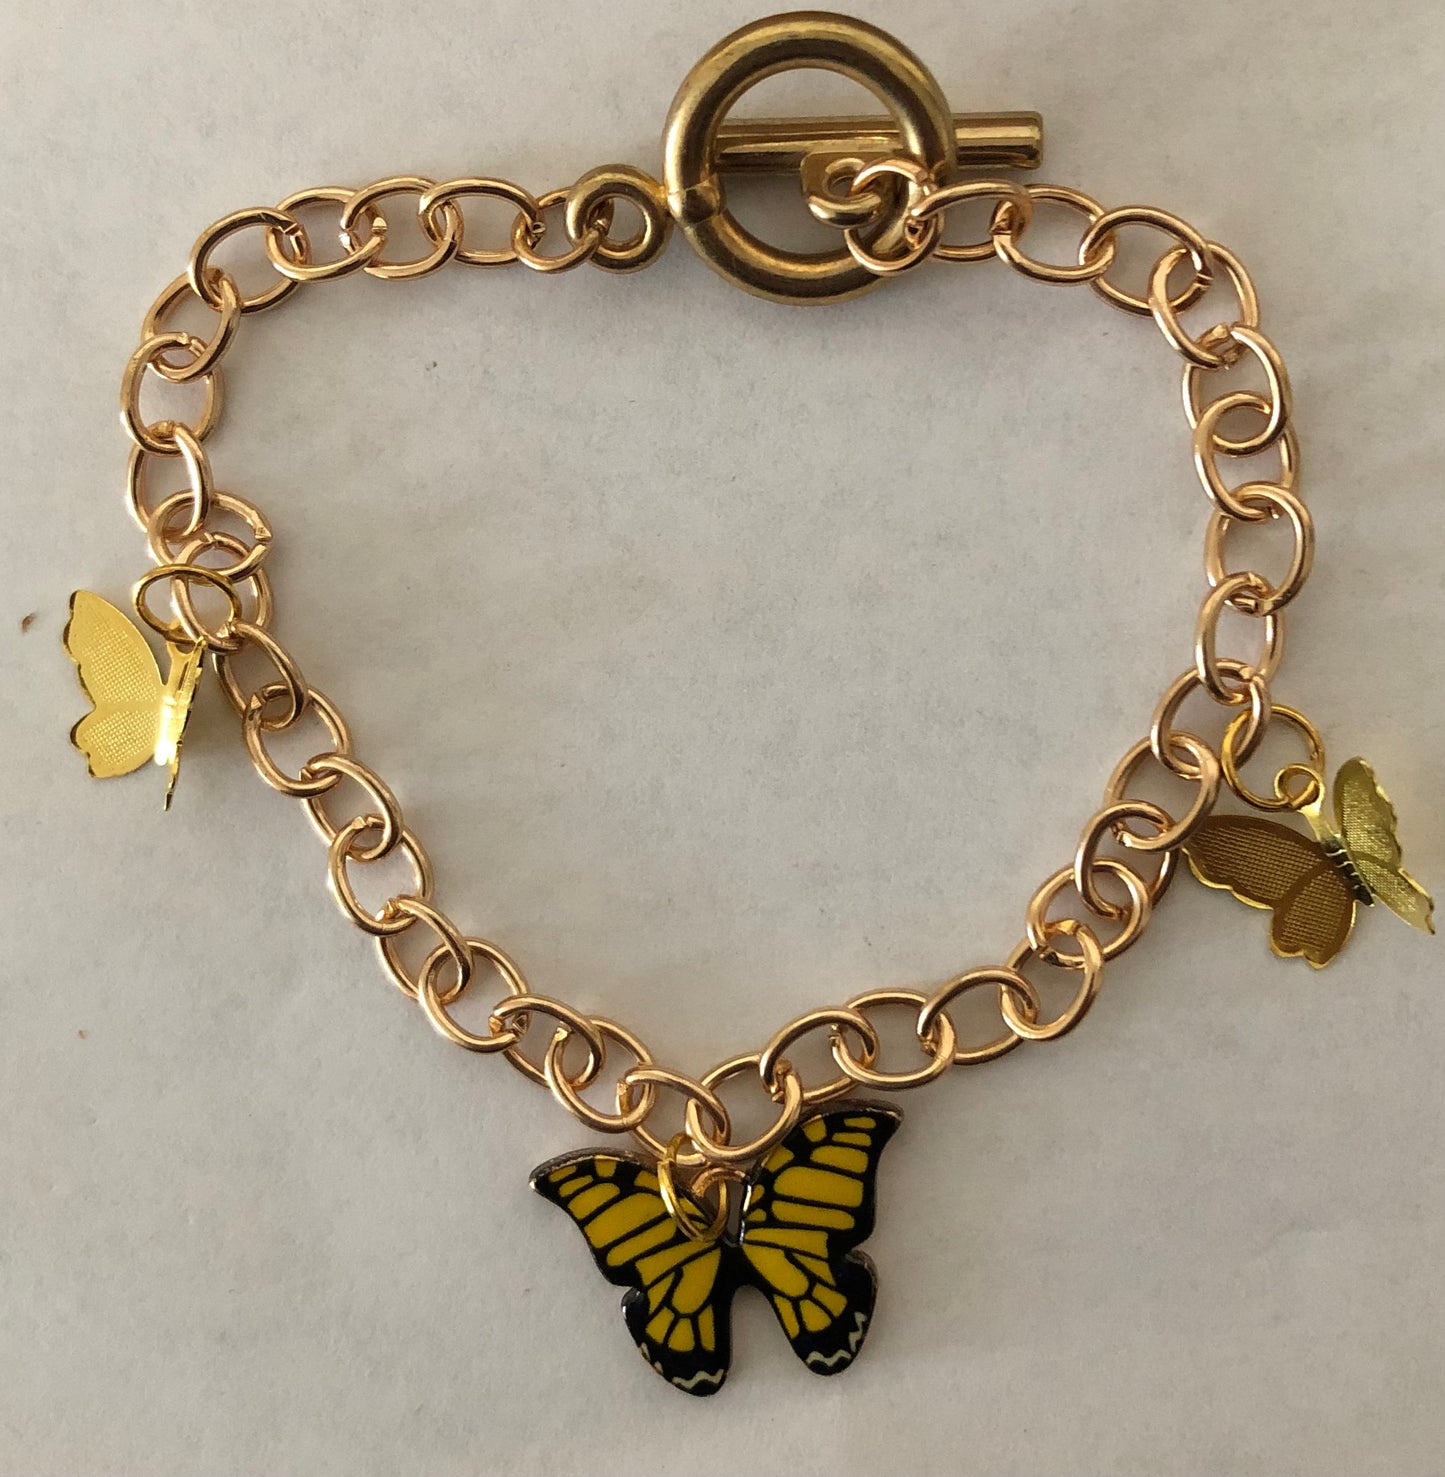 Butterfly jewelry set